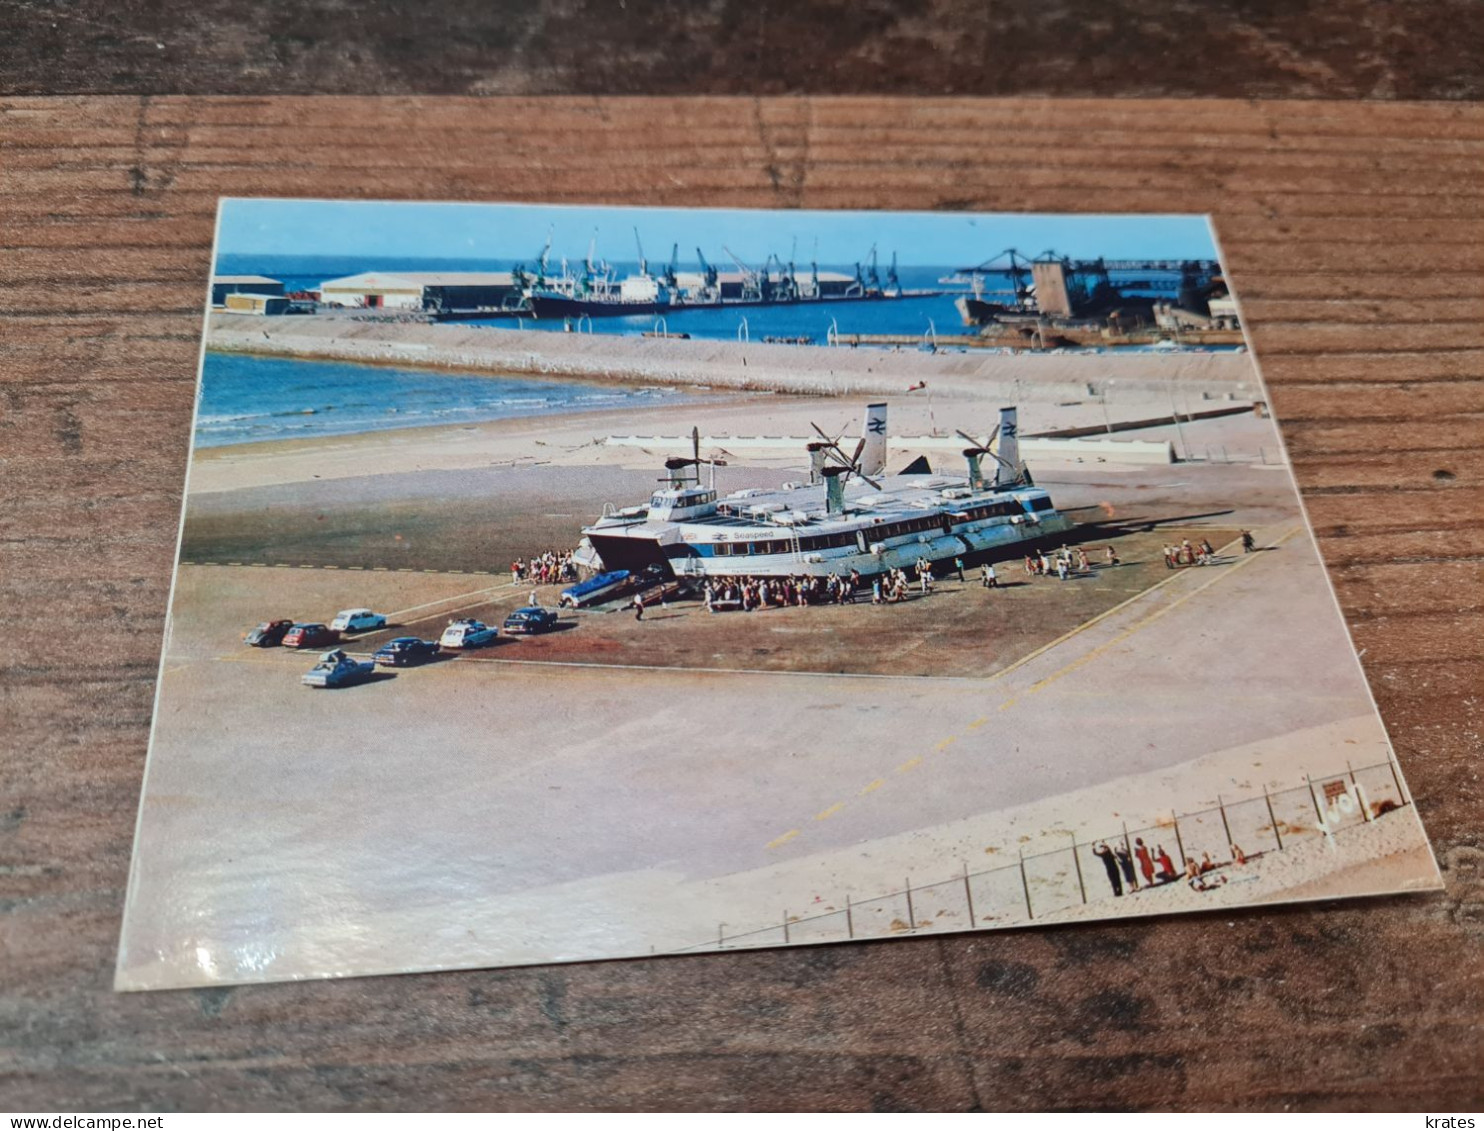 Postcard - Ship, Hovercrafts     (V 37695) - Hovercraft